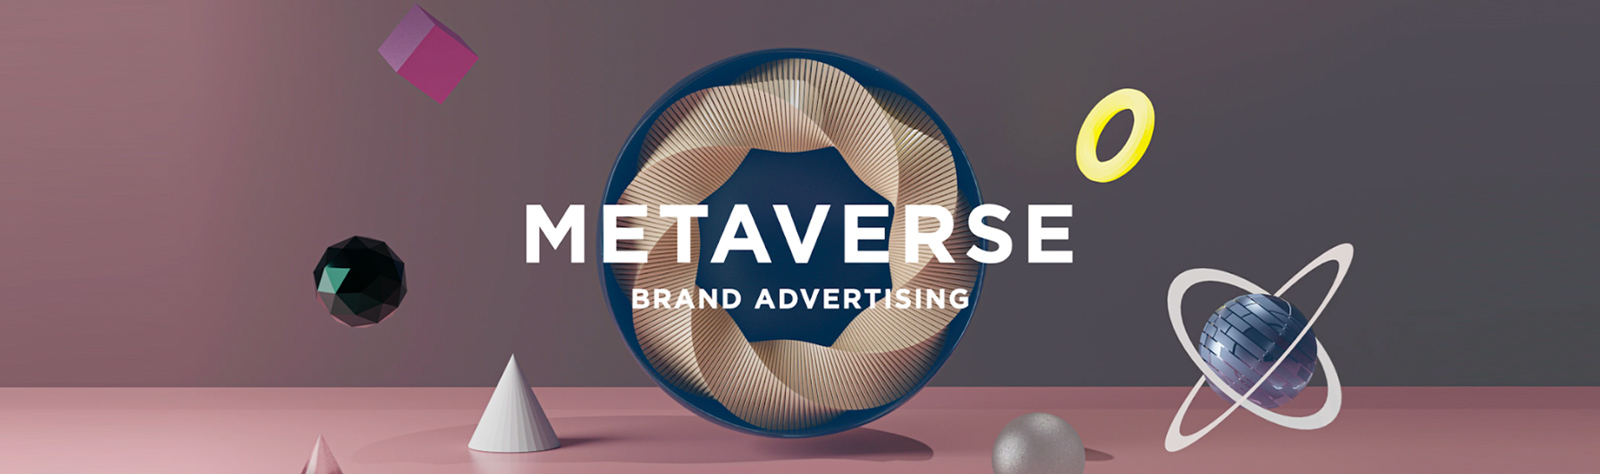 Defining MetaVerse Content Marketing